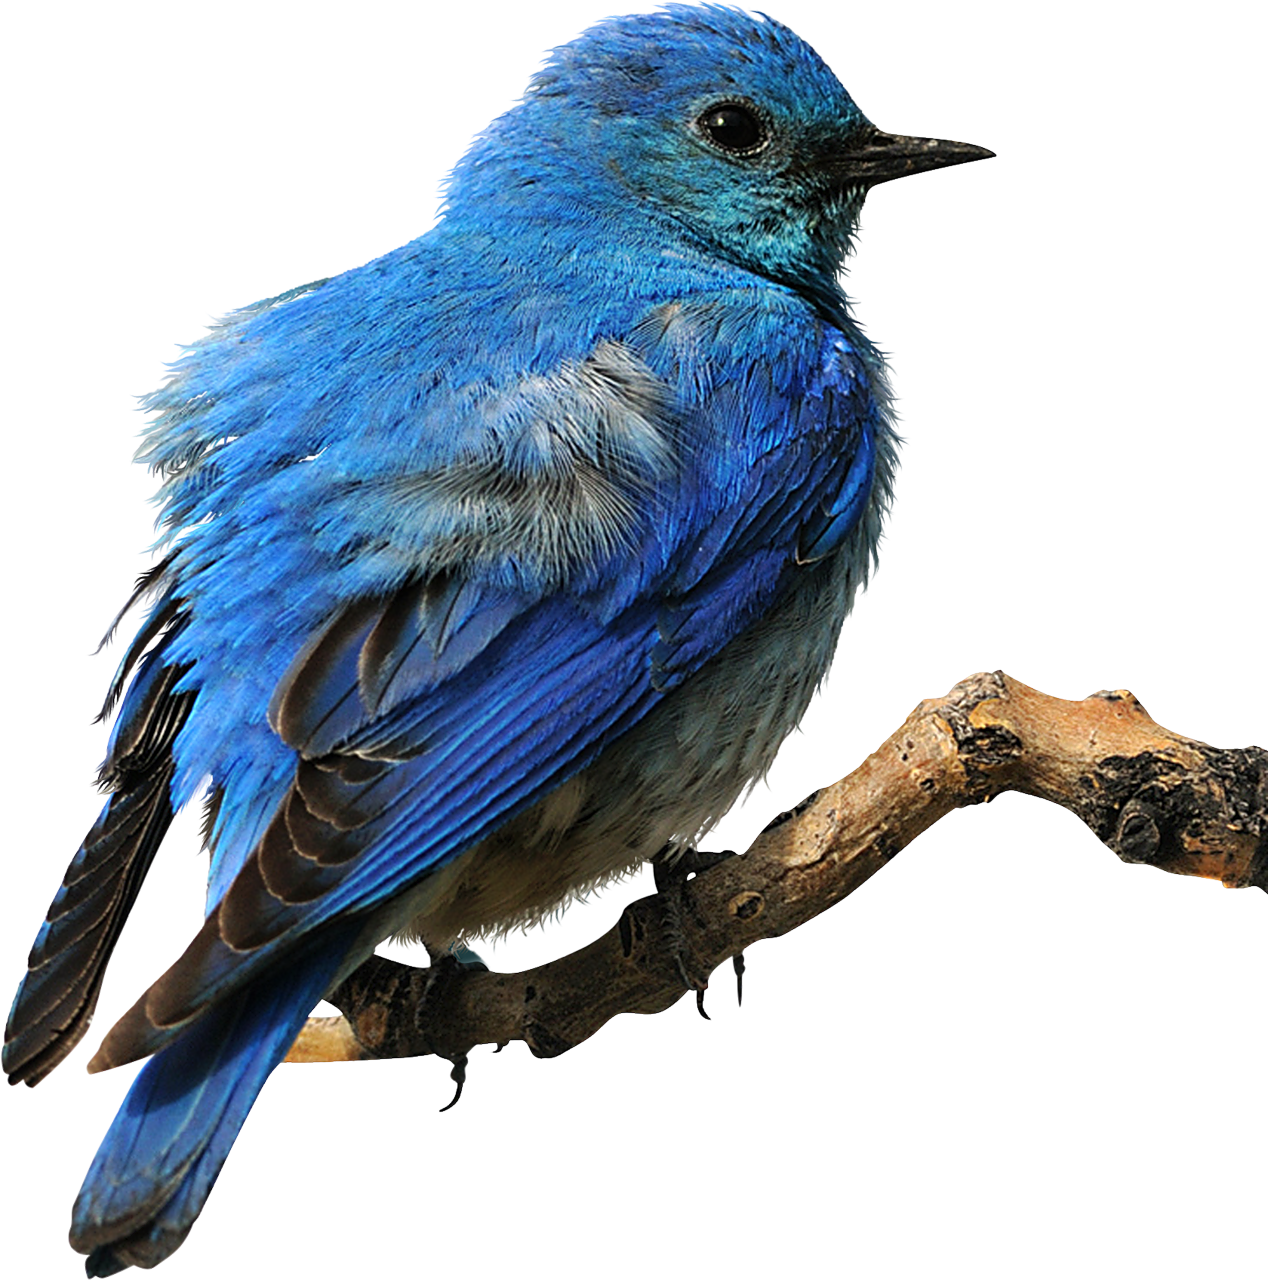 Eastern Bluebird Clip Art Bird Png Download 12681280 Free